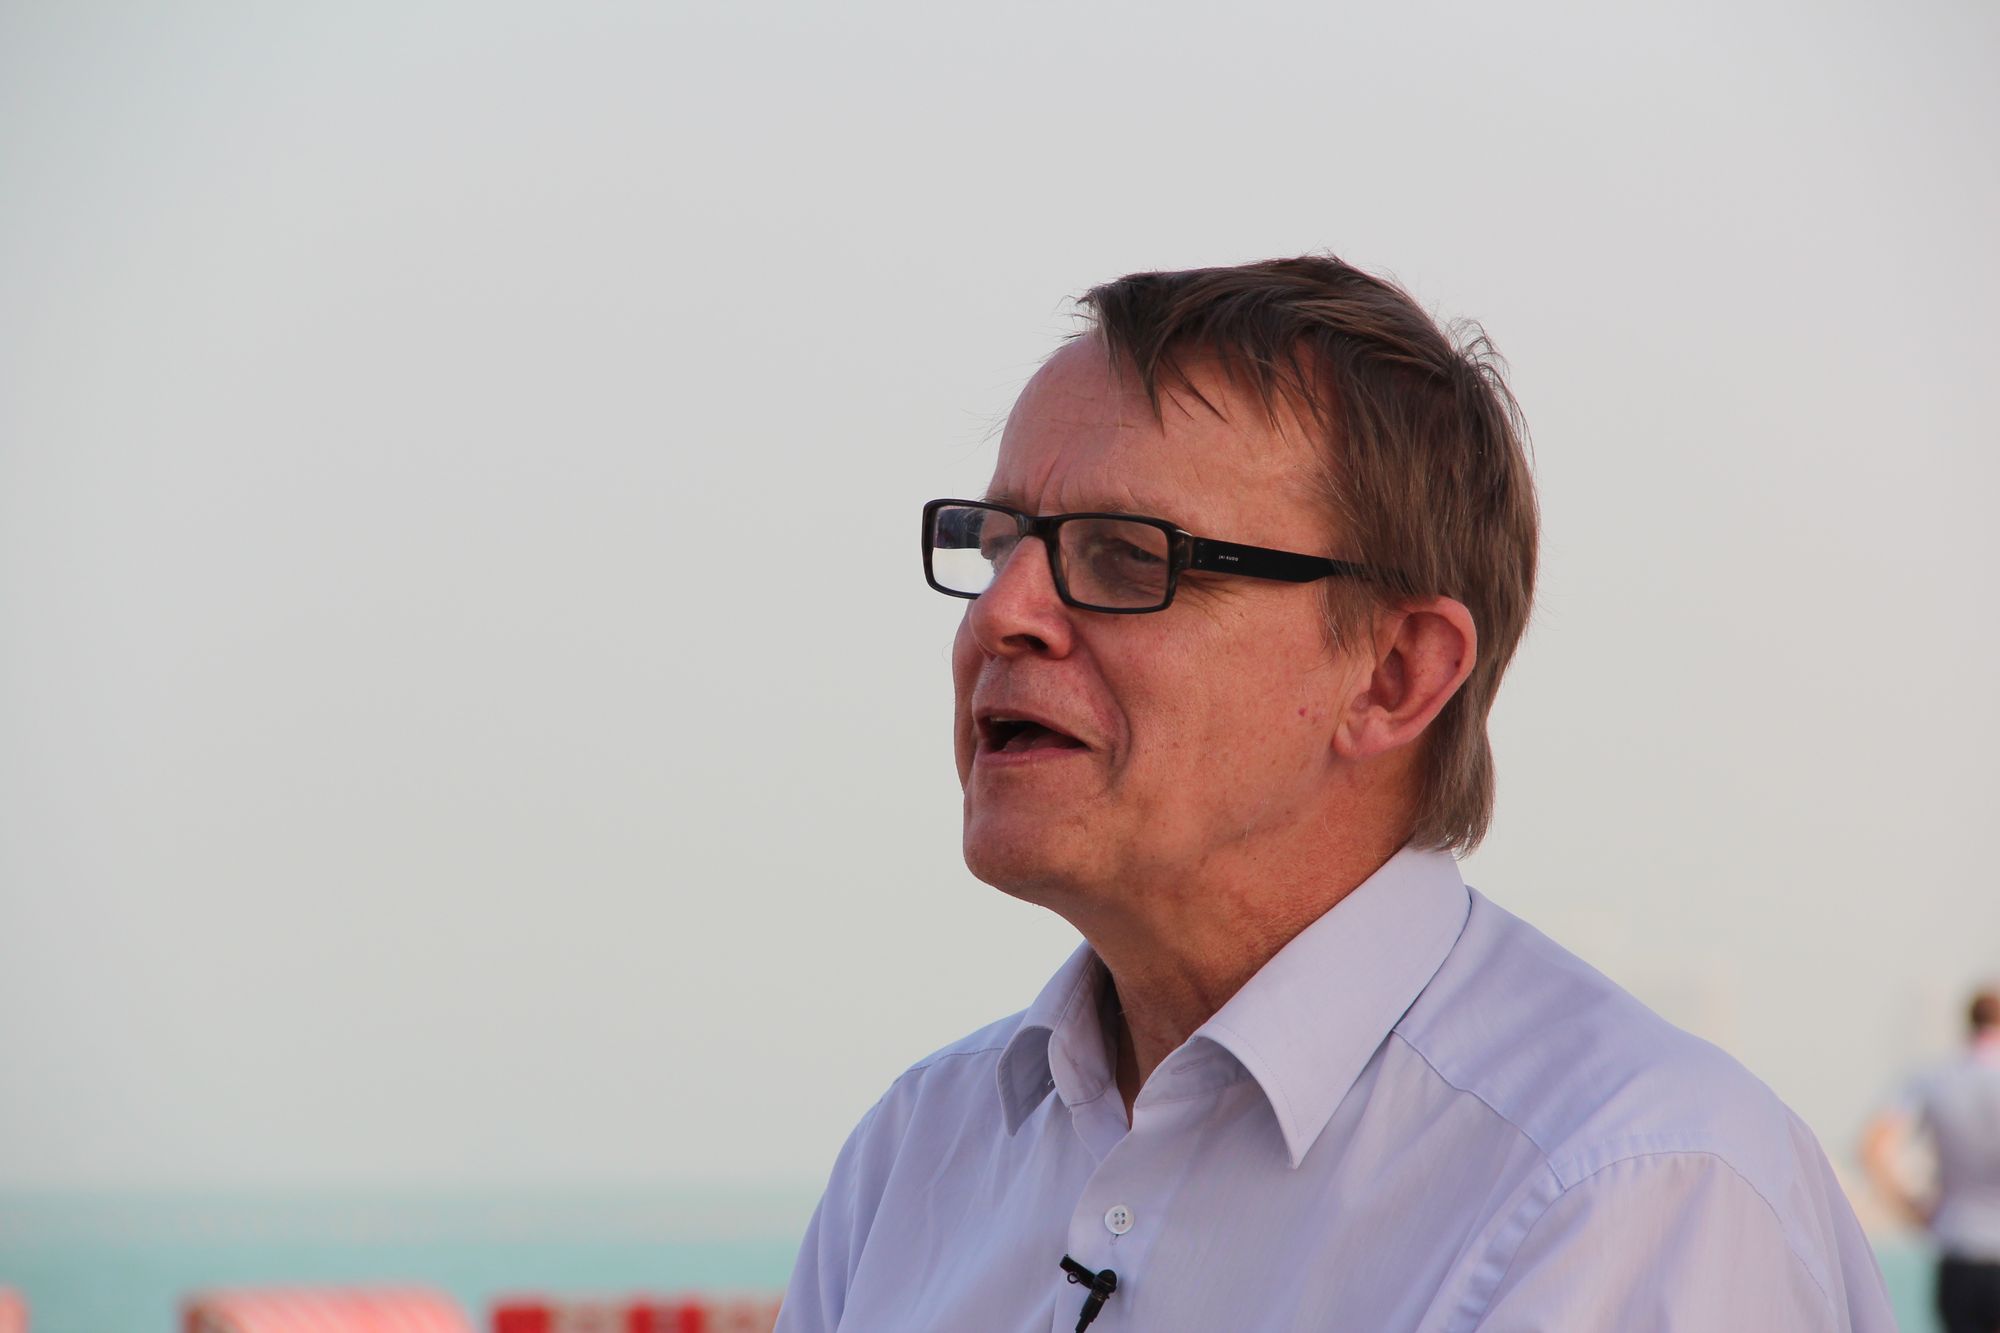 Hans Rosling: "Is de VN helemaal zot geworden?"